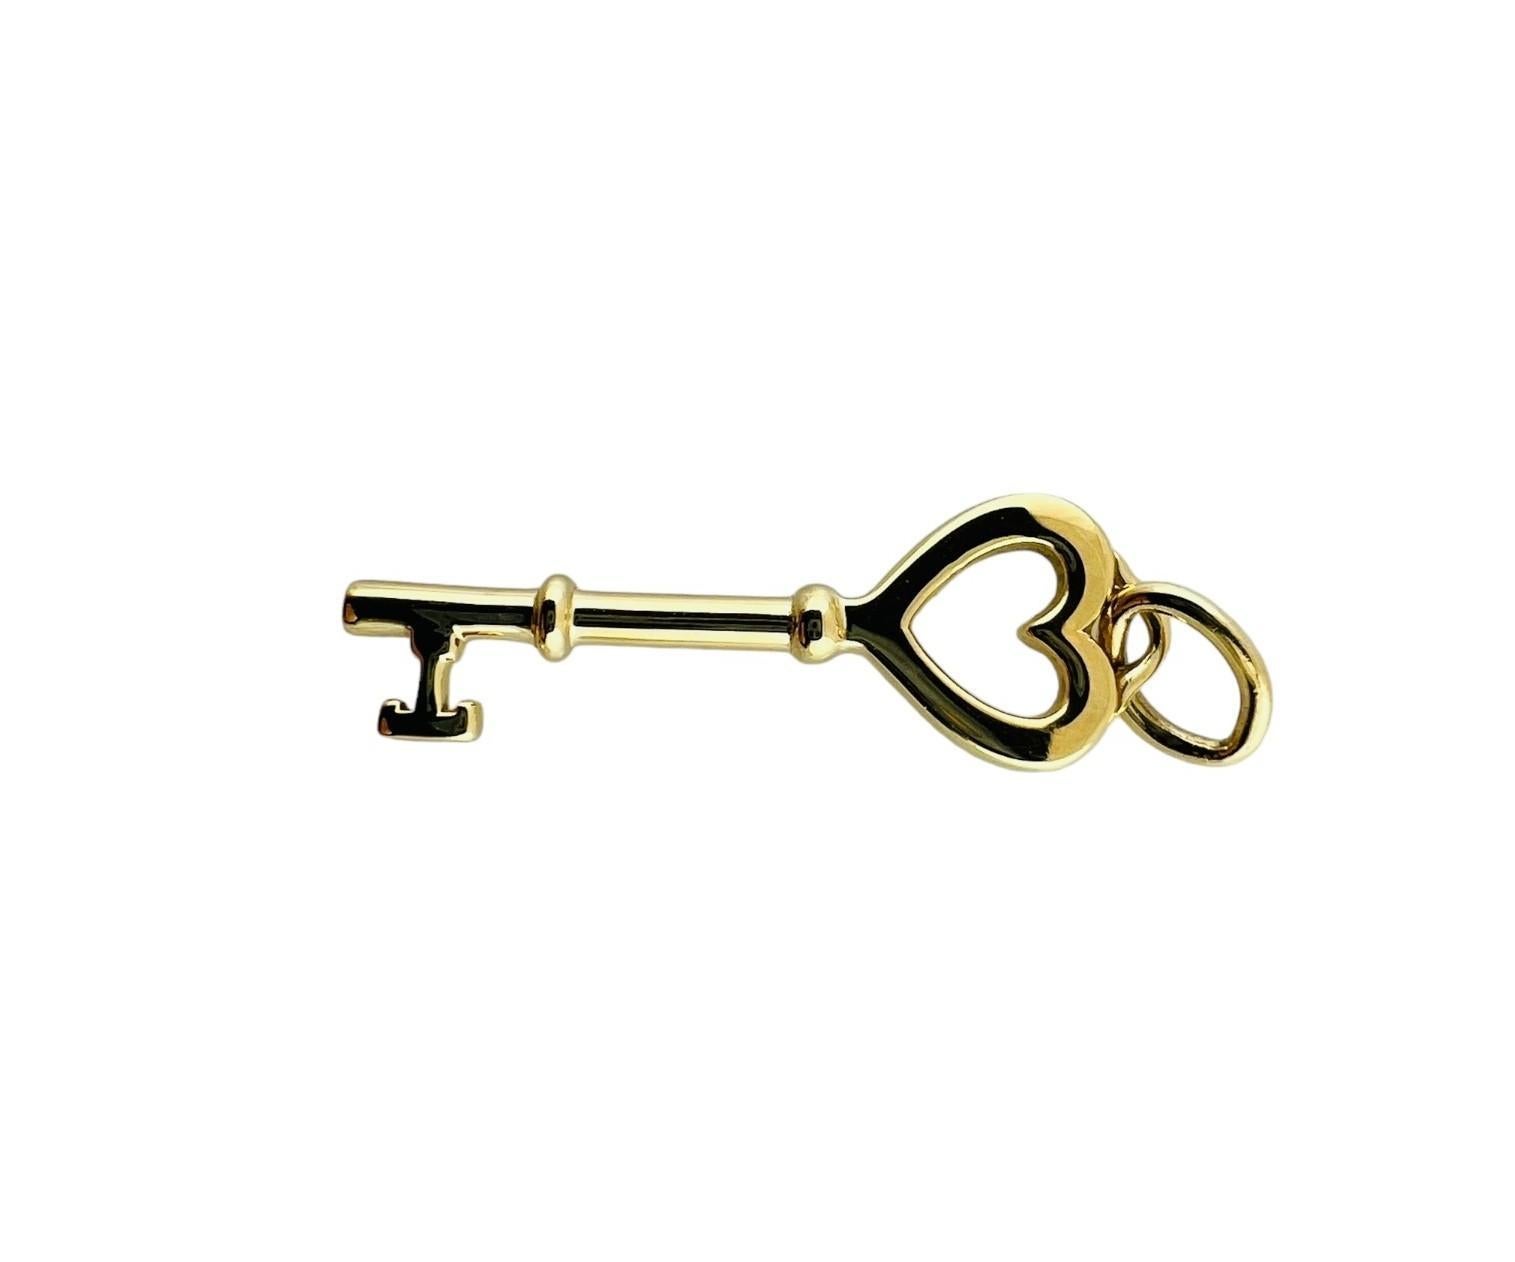 Tiffany & Co. 18K Yellow Gold Heart Key Pendant #16679 1